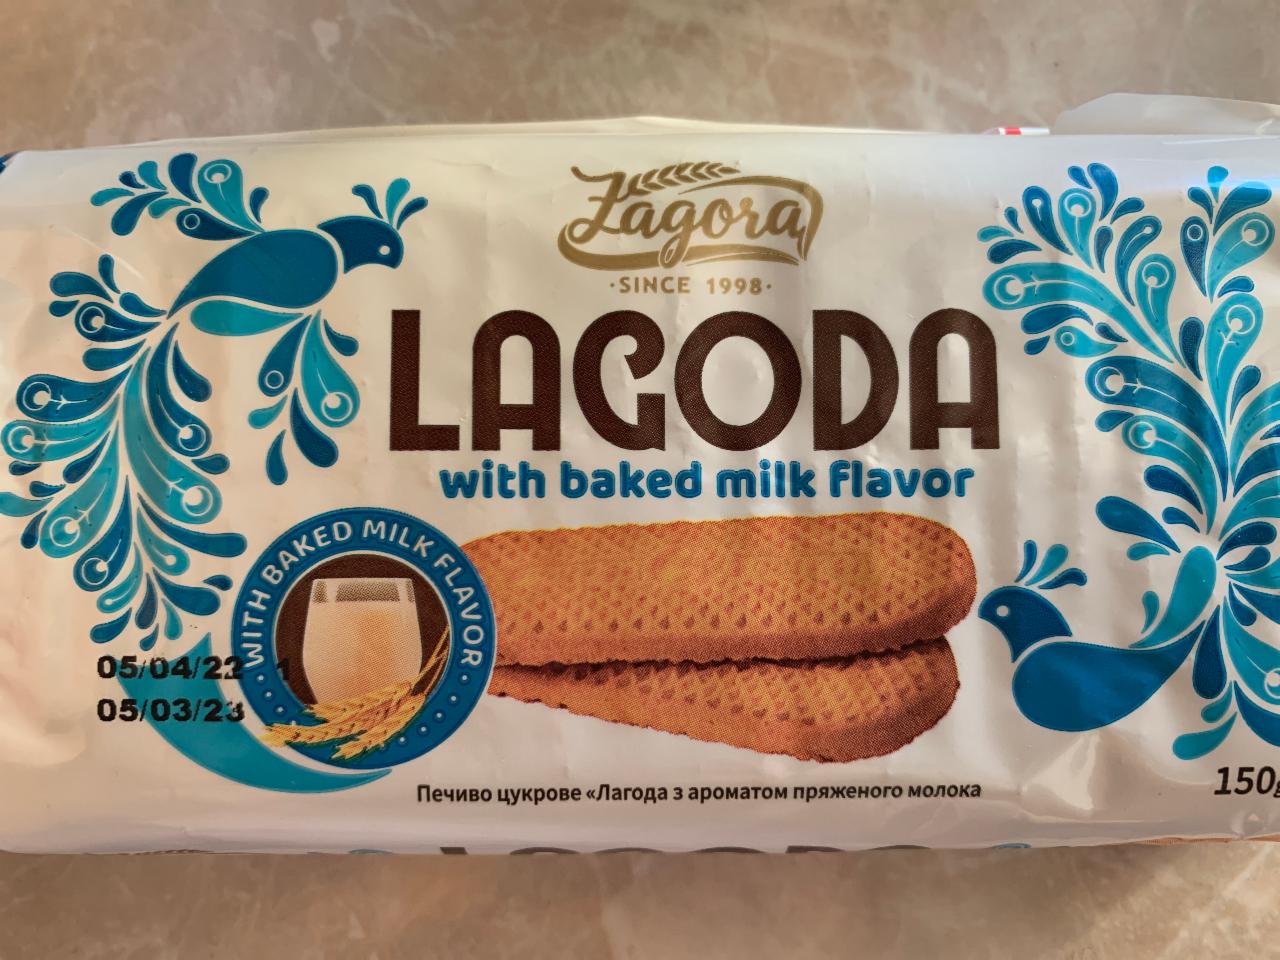 Фото - Печиво цукрове з ароматом пряженого молока Lagoda Zagora